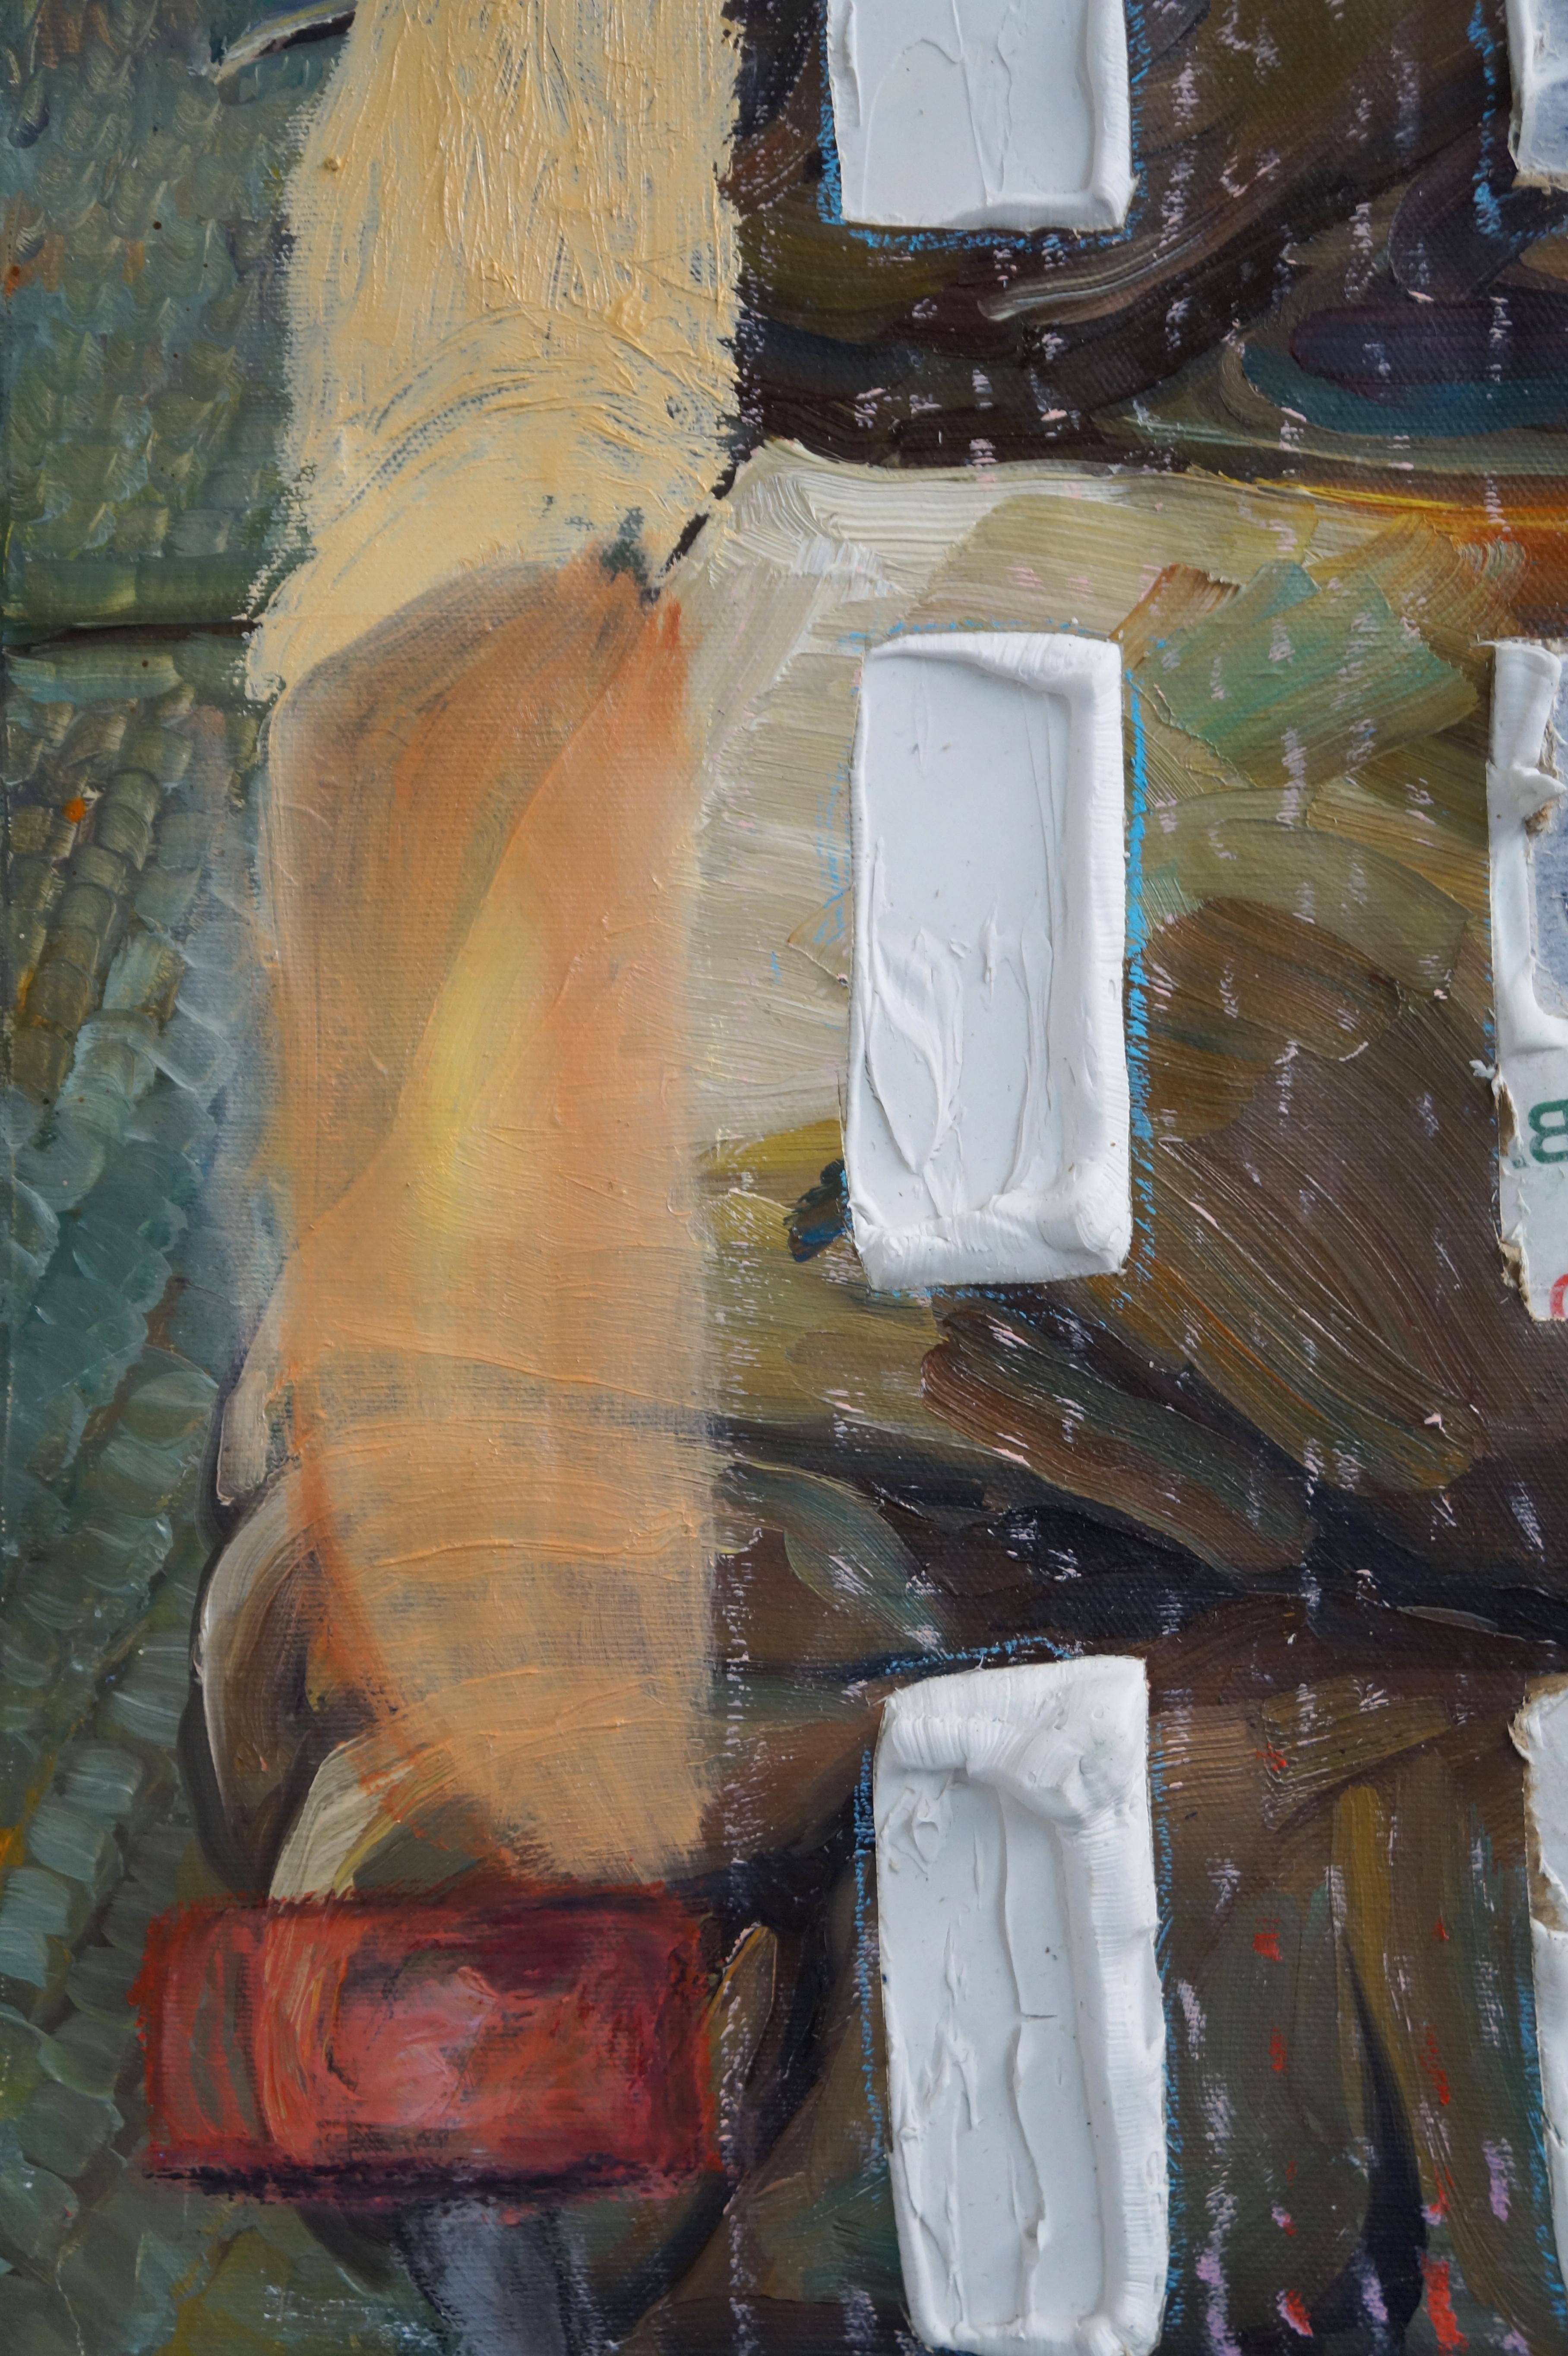 CHAISE EN ROSE AVEC UN T-SHIRT BLANC - Figuratif abstrait texturé, brun, rouge, vert - Abstrait Painting par Eleanor Aldrich